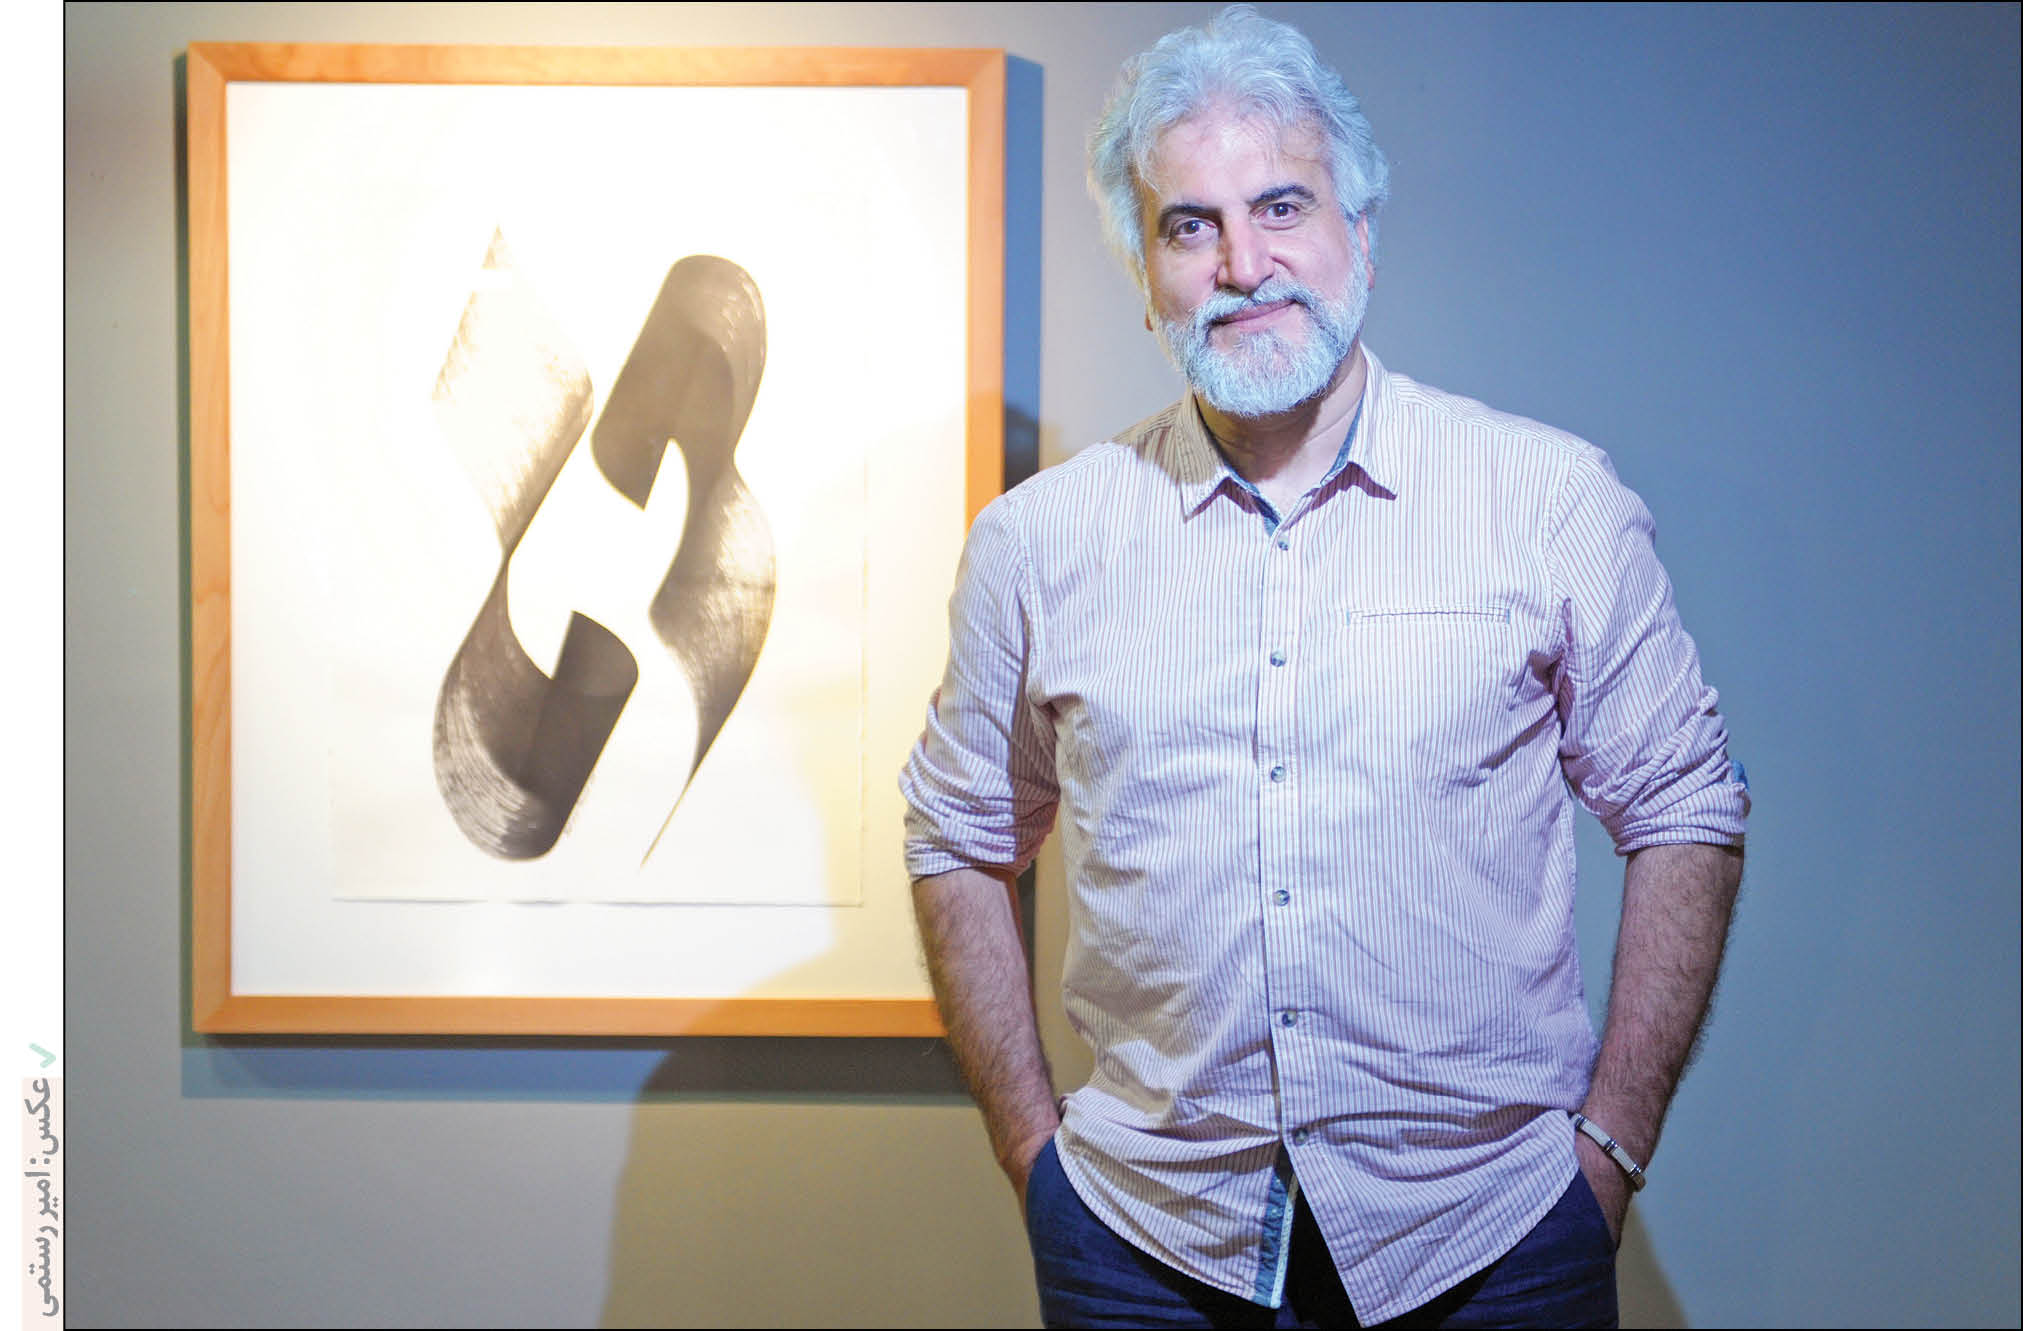 نمایشگاه آثار هنرجویان بهمن پناهی، استاد خوشنویسی و مبدع موزیکالیگرافی در فرهنگستان هنر برپاست